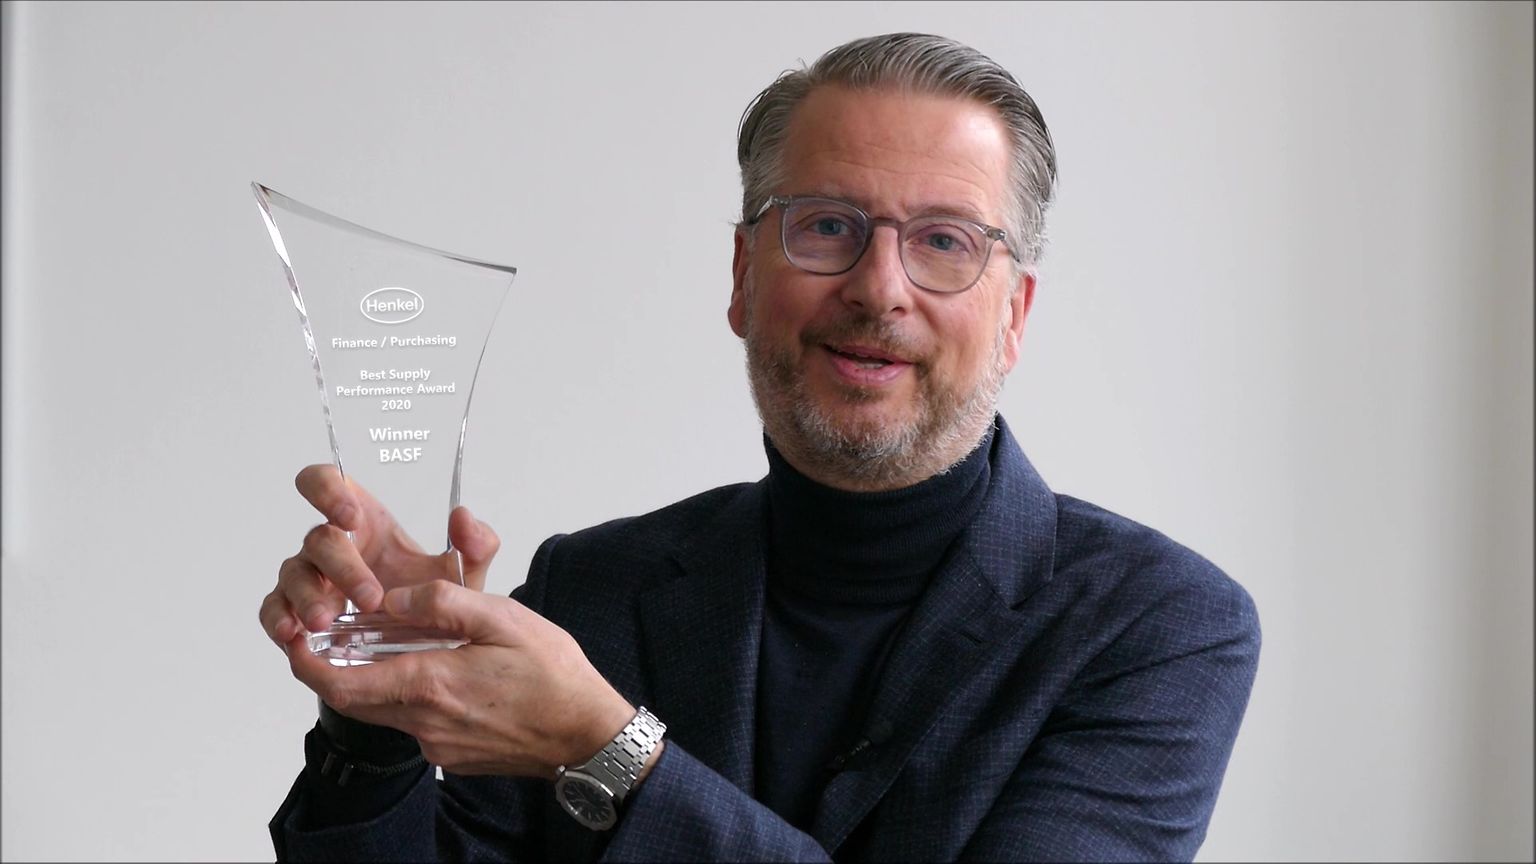 Ralph Schweens holding an award